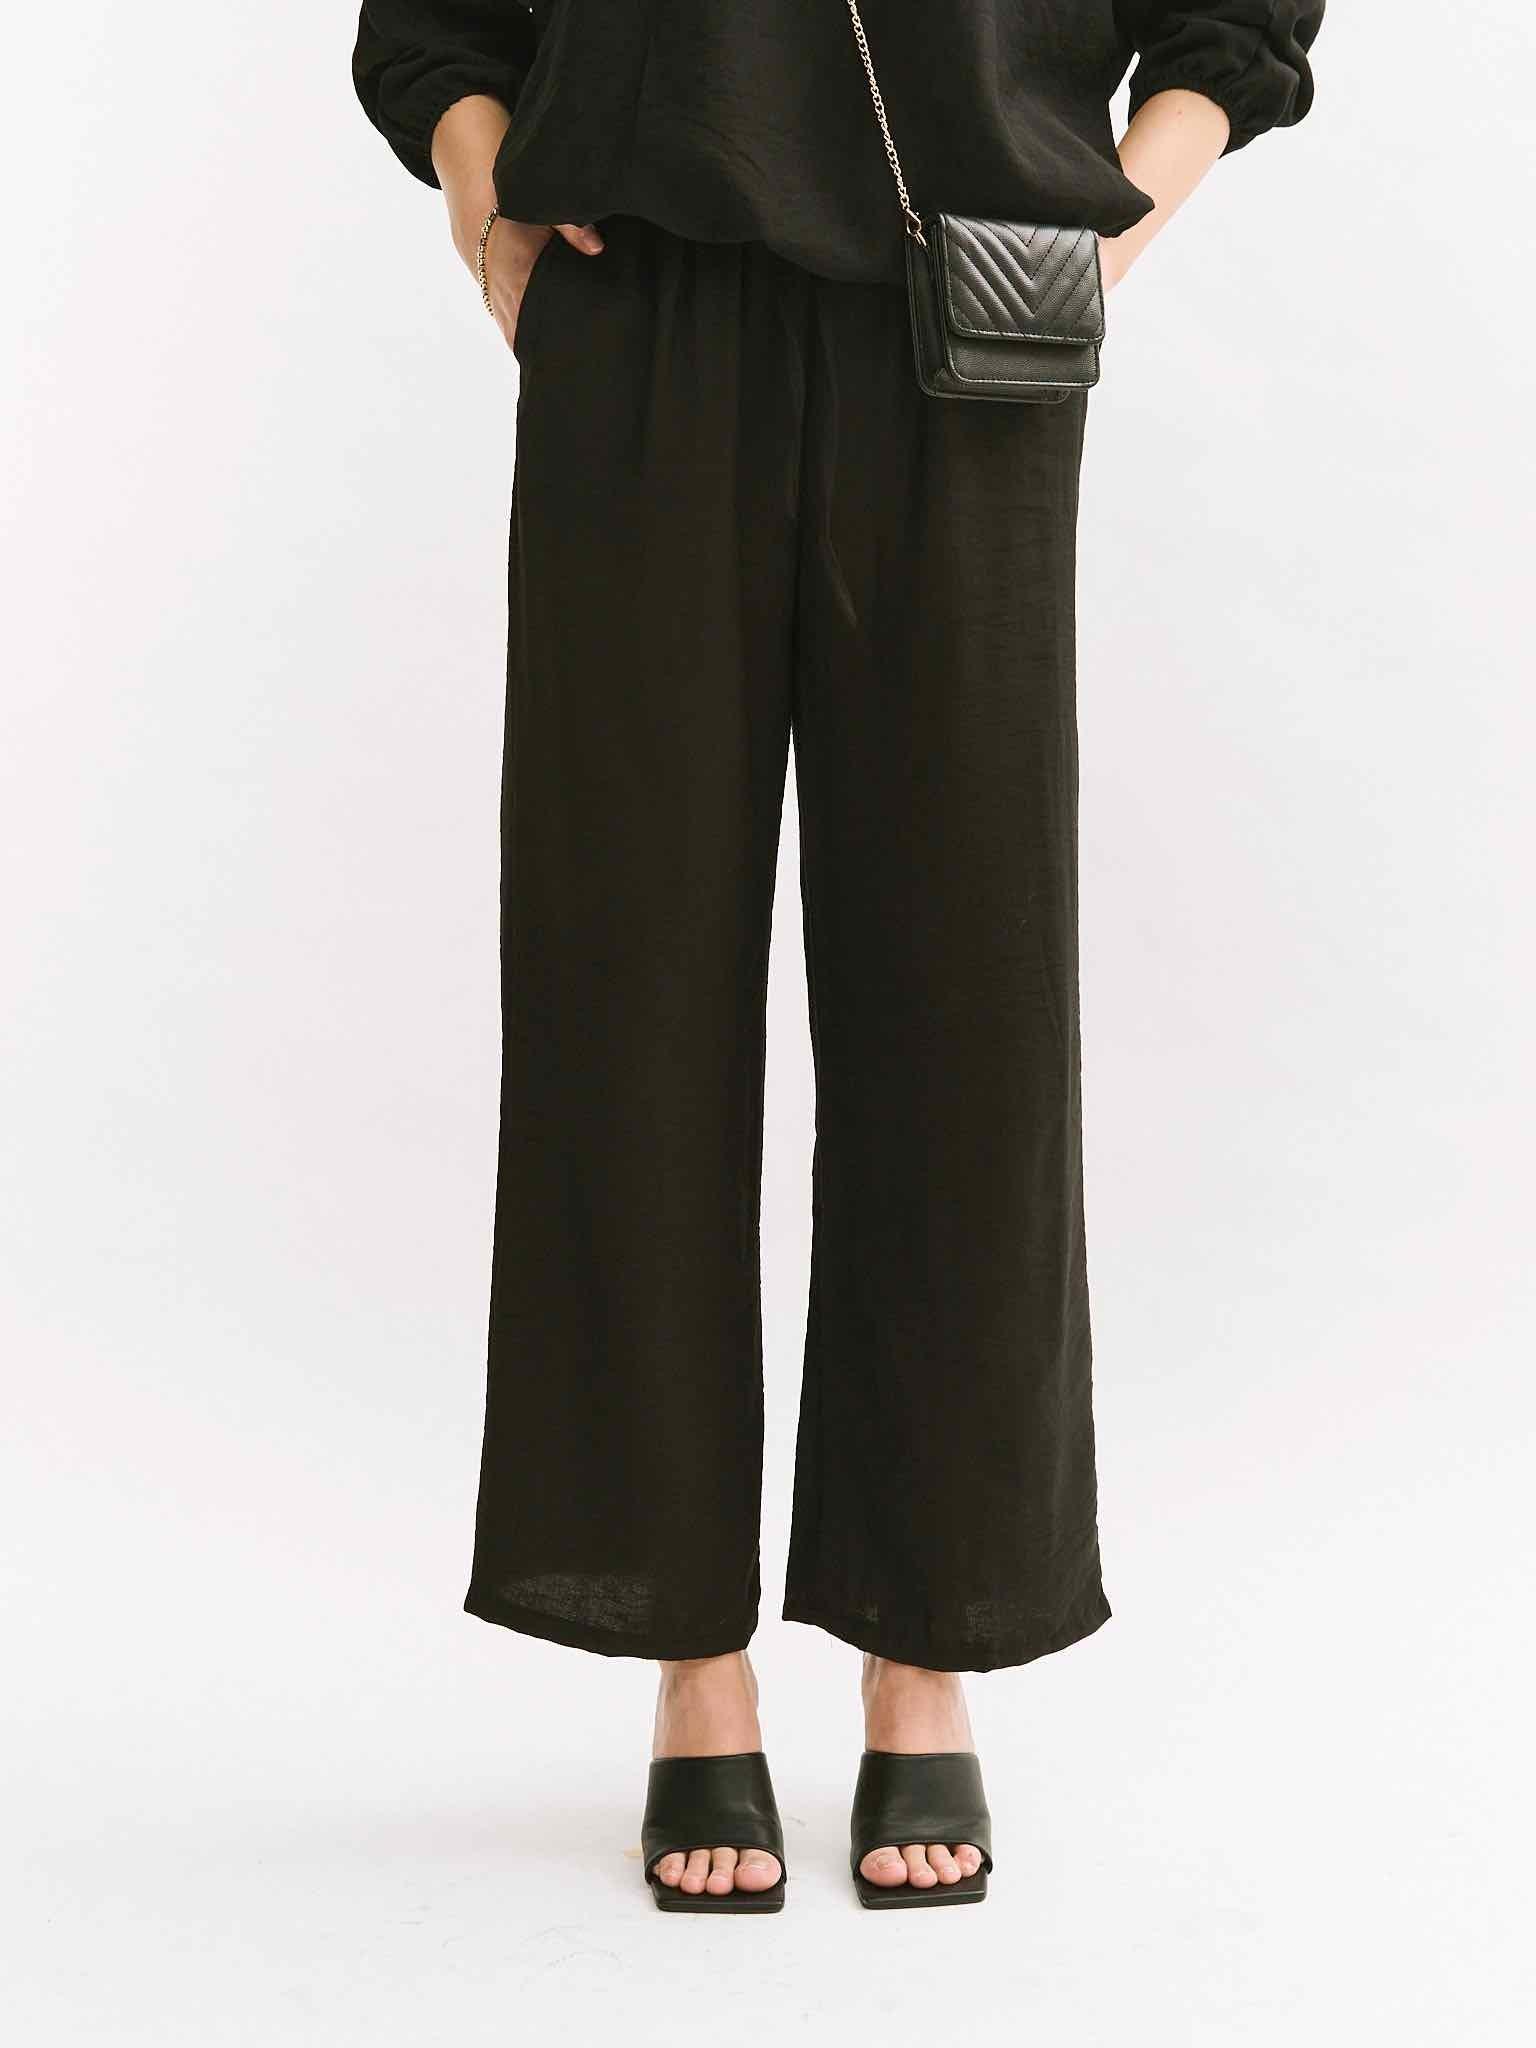 Spring Pants für Damen in Black von Maingold Basics